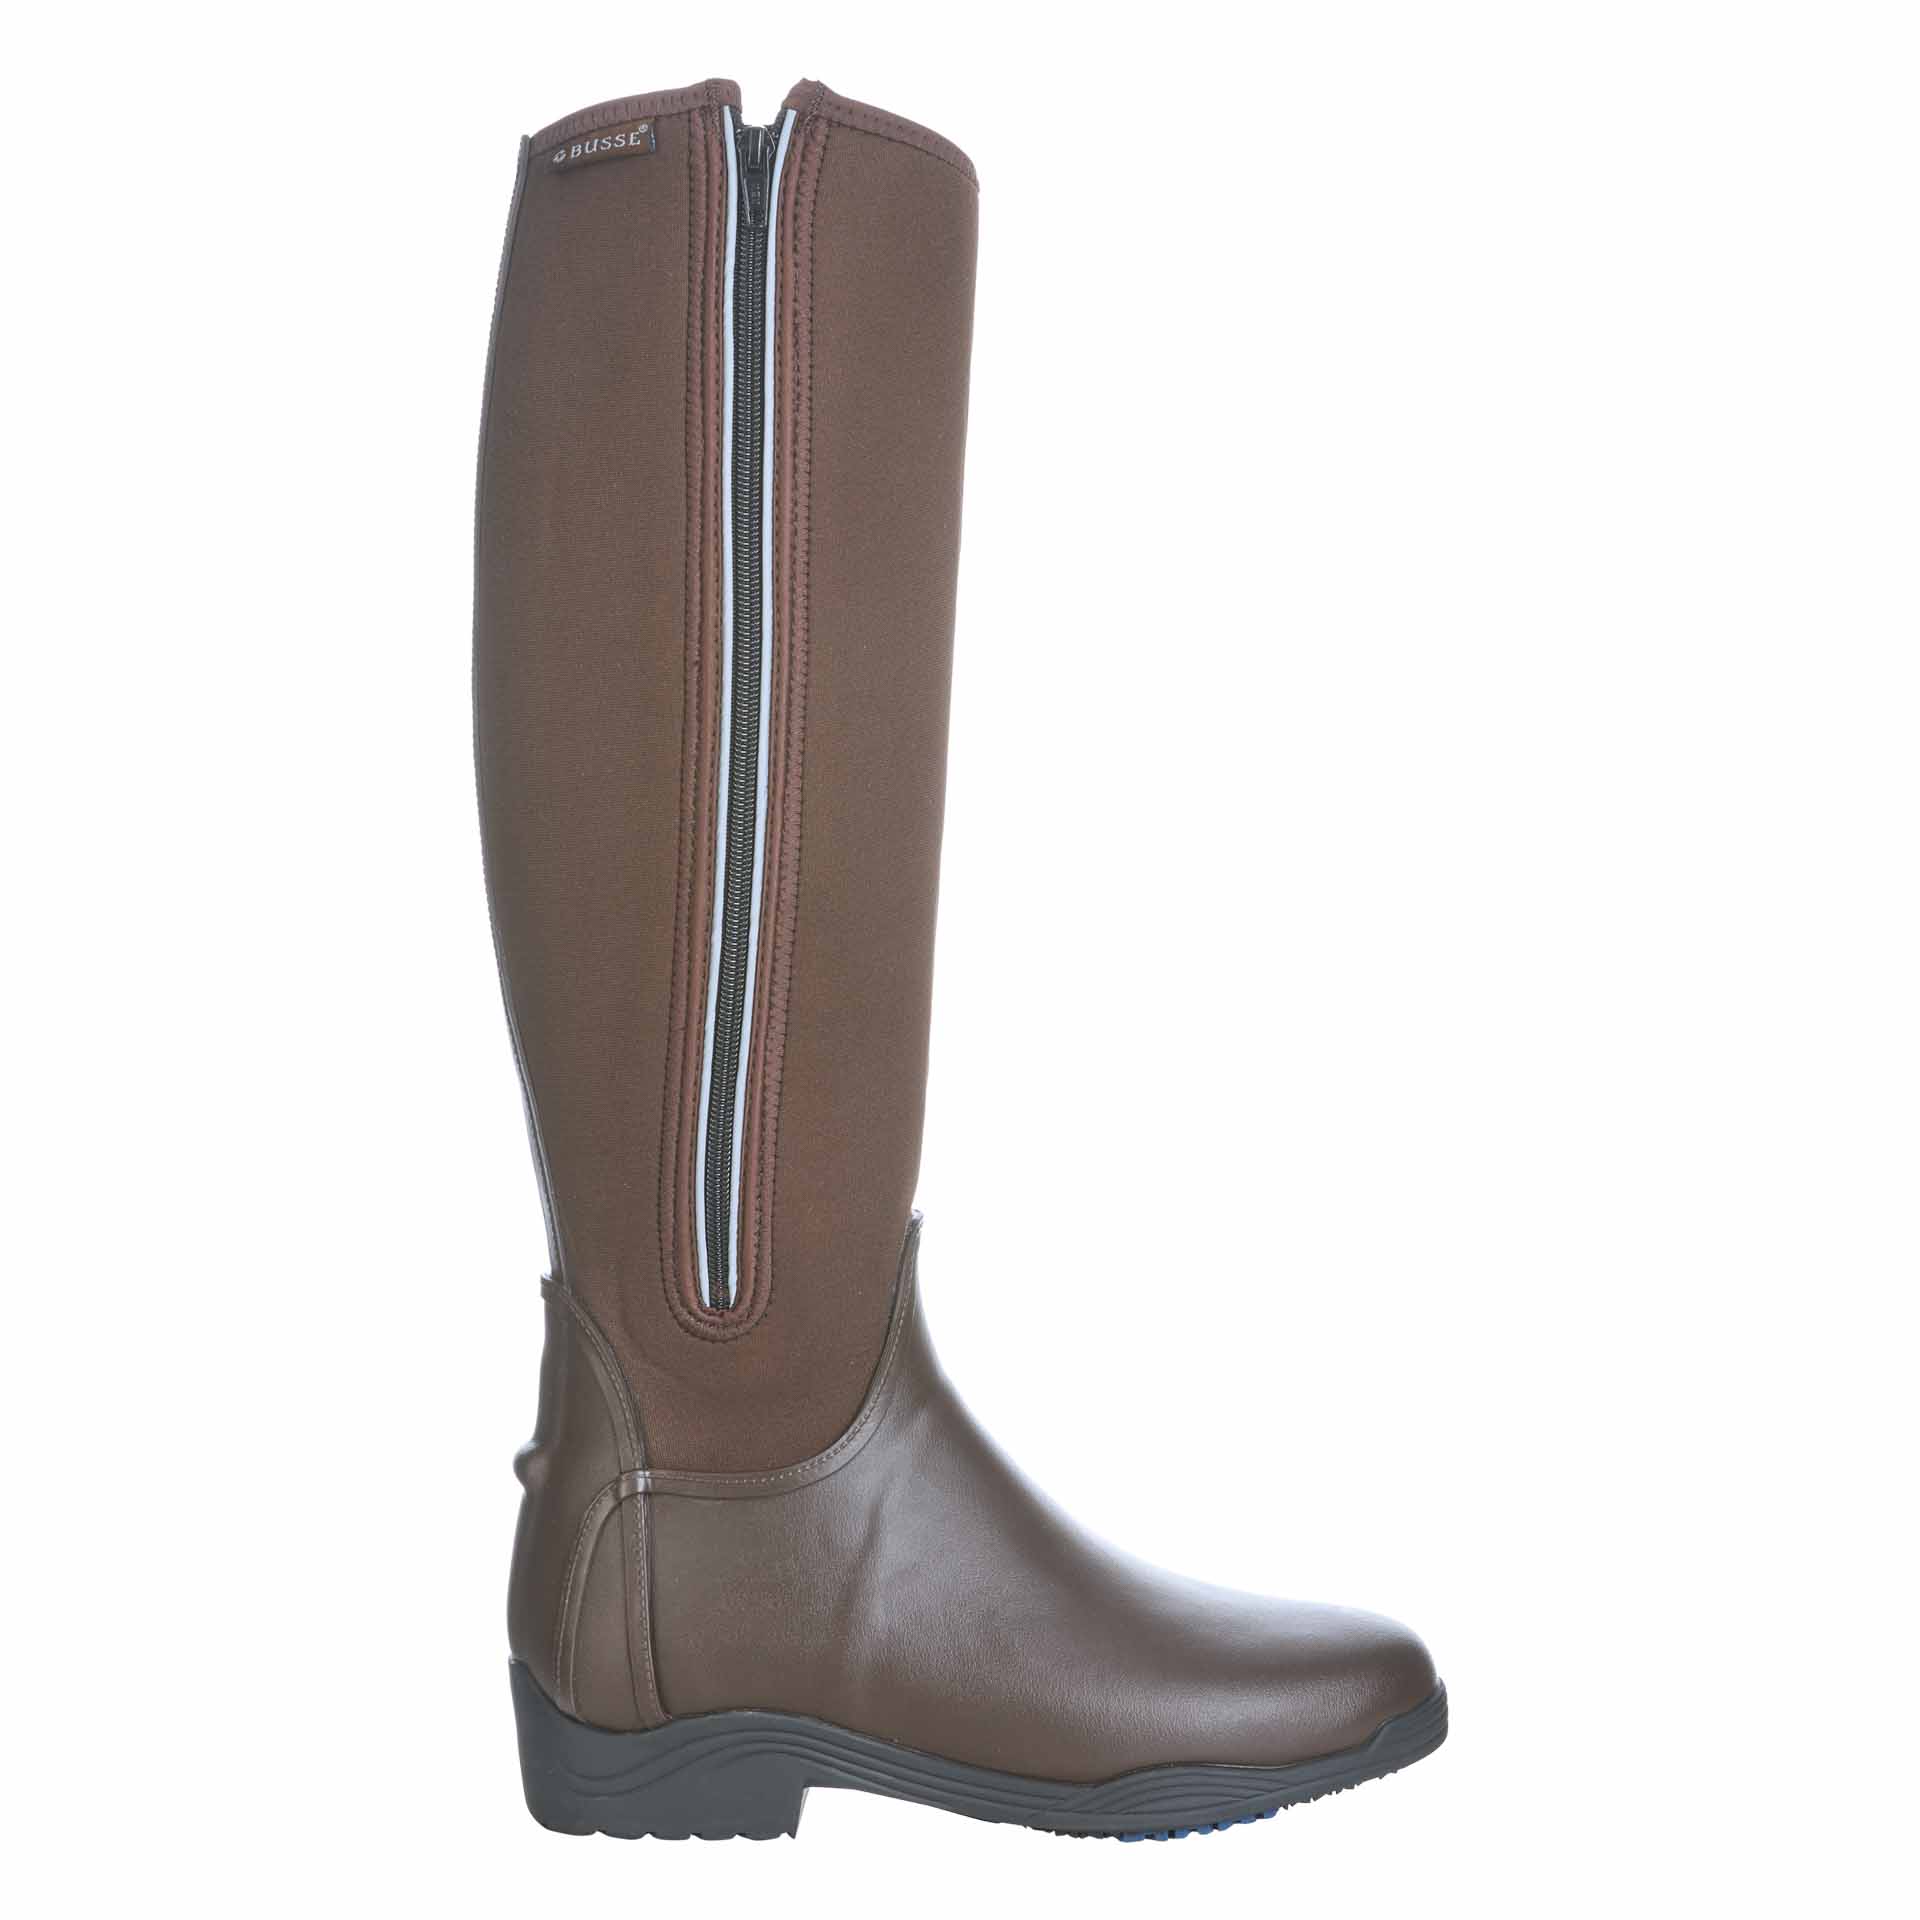 Boots d'équitation mud BUSSE CALGARY, marron